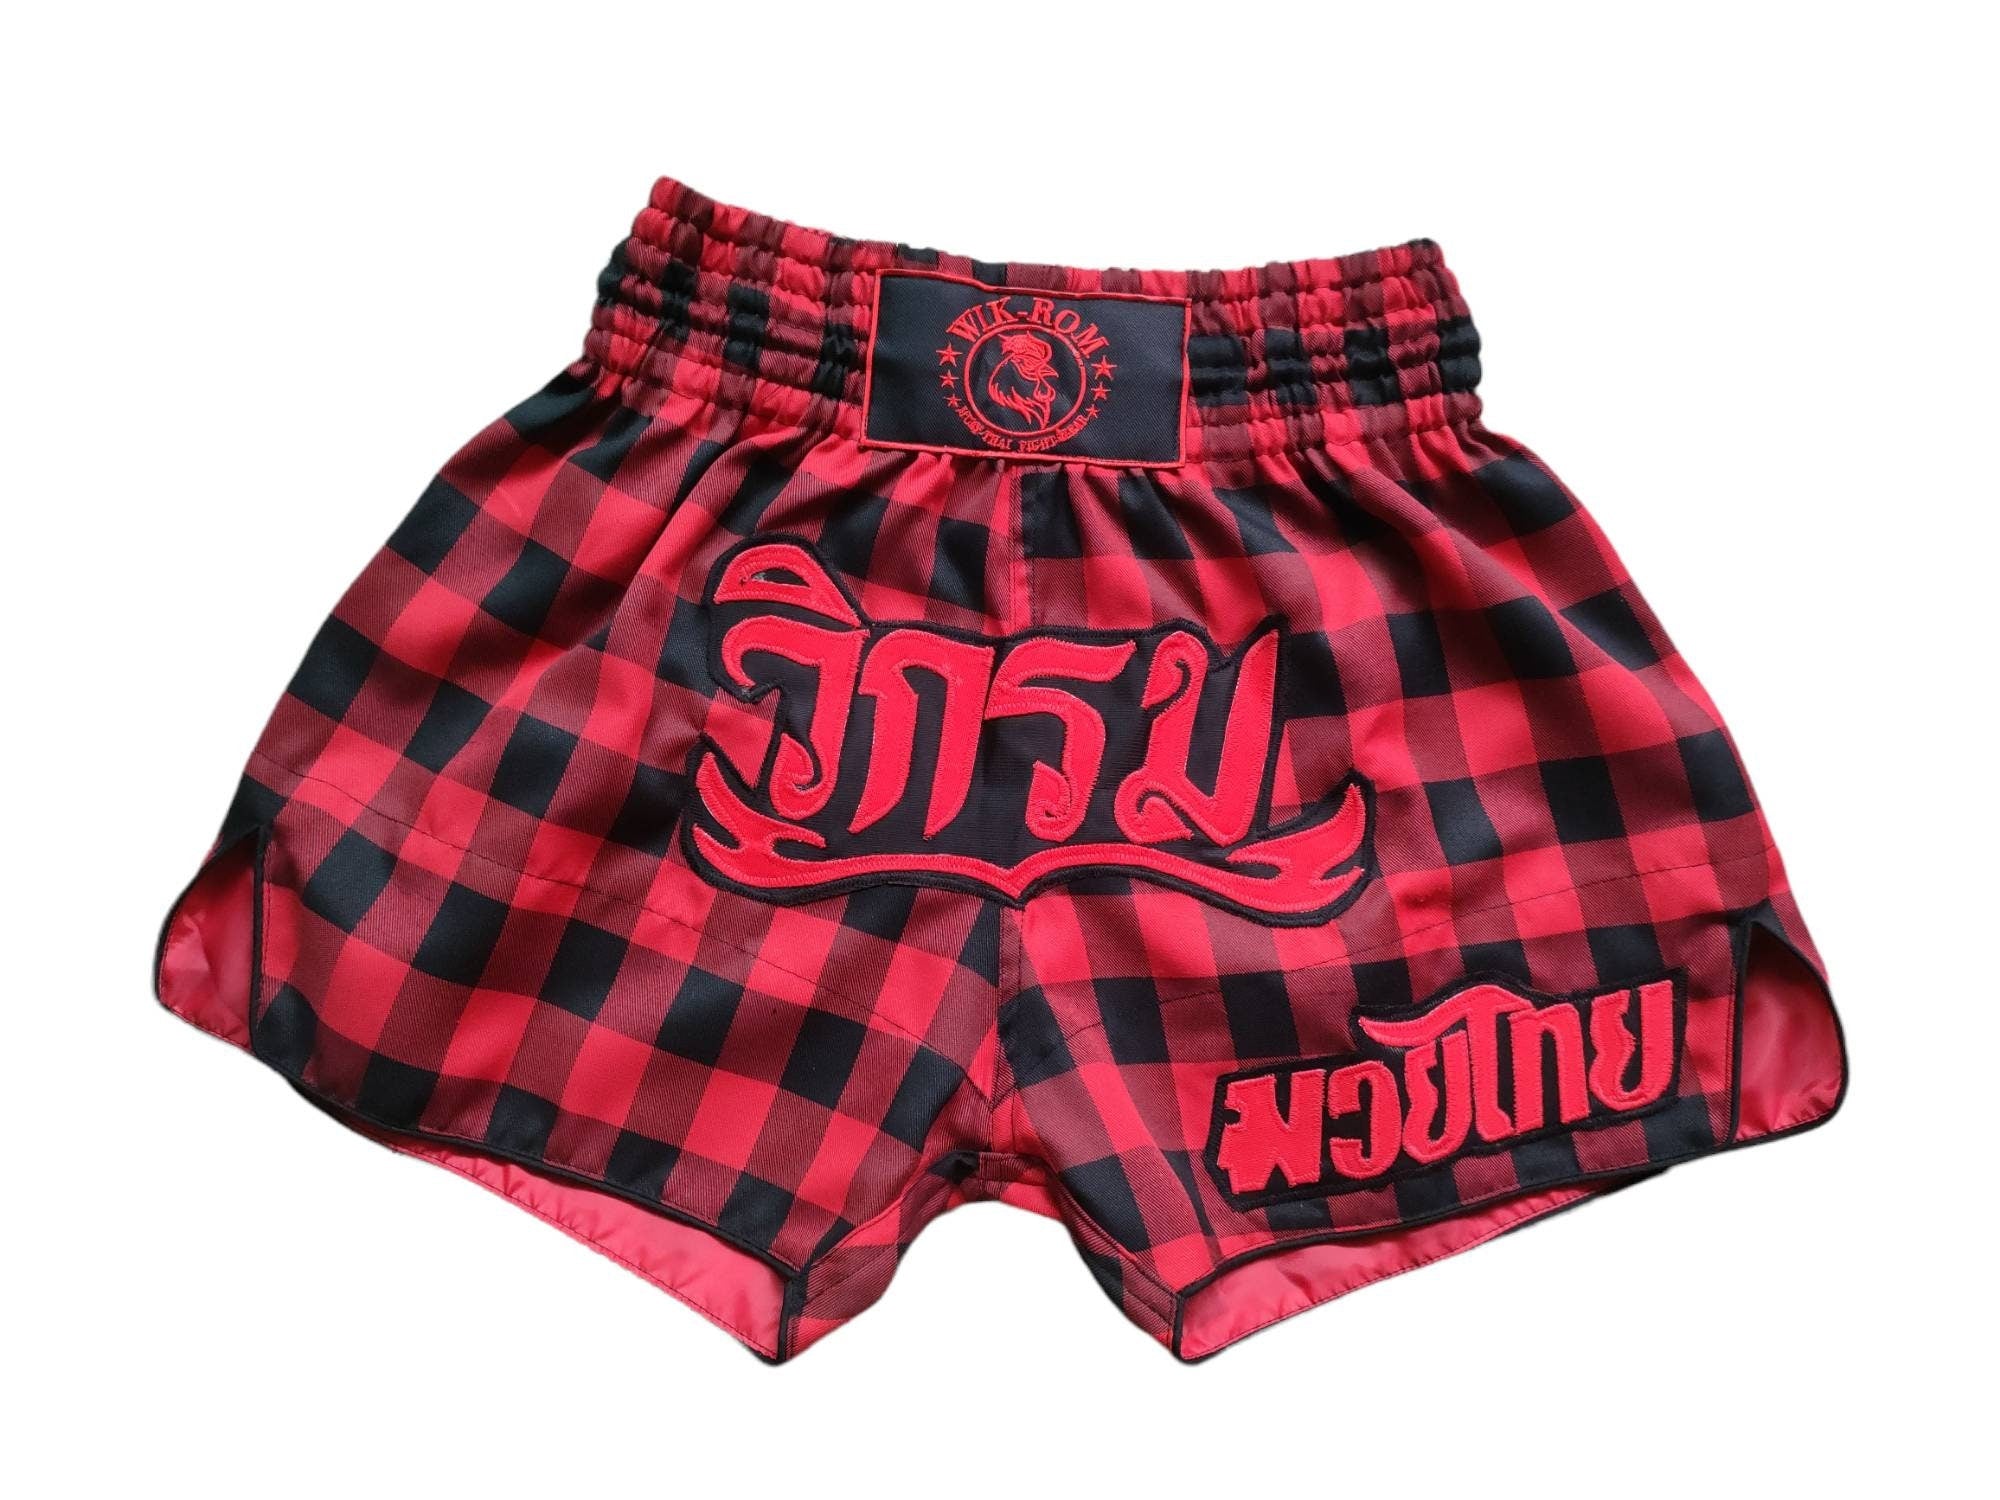 Limited Muay thai boxing shorts scotish style Wik-Rom merk 5% van de prijs is voor het goede doel & solidariteit uit Thailand Kleding Gender-neutrale kleding volwassenen Shorts 